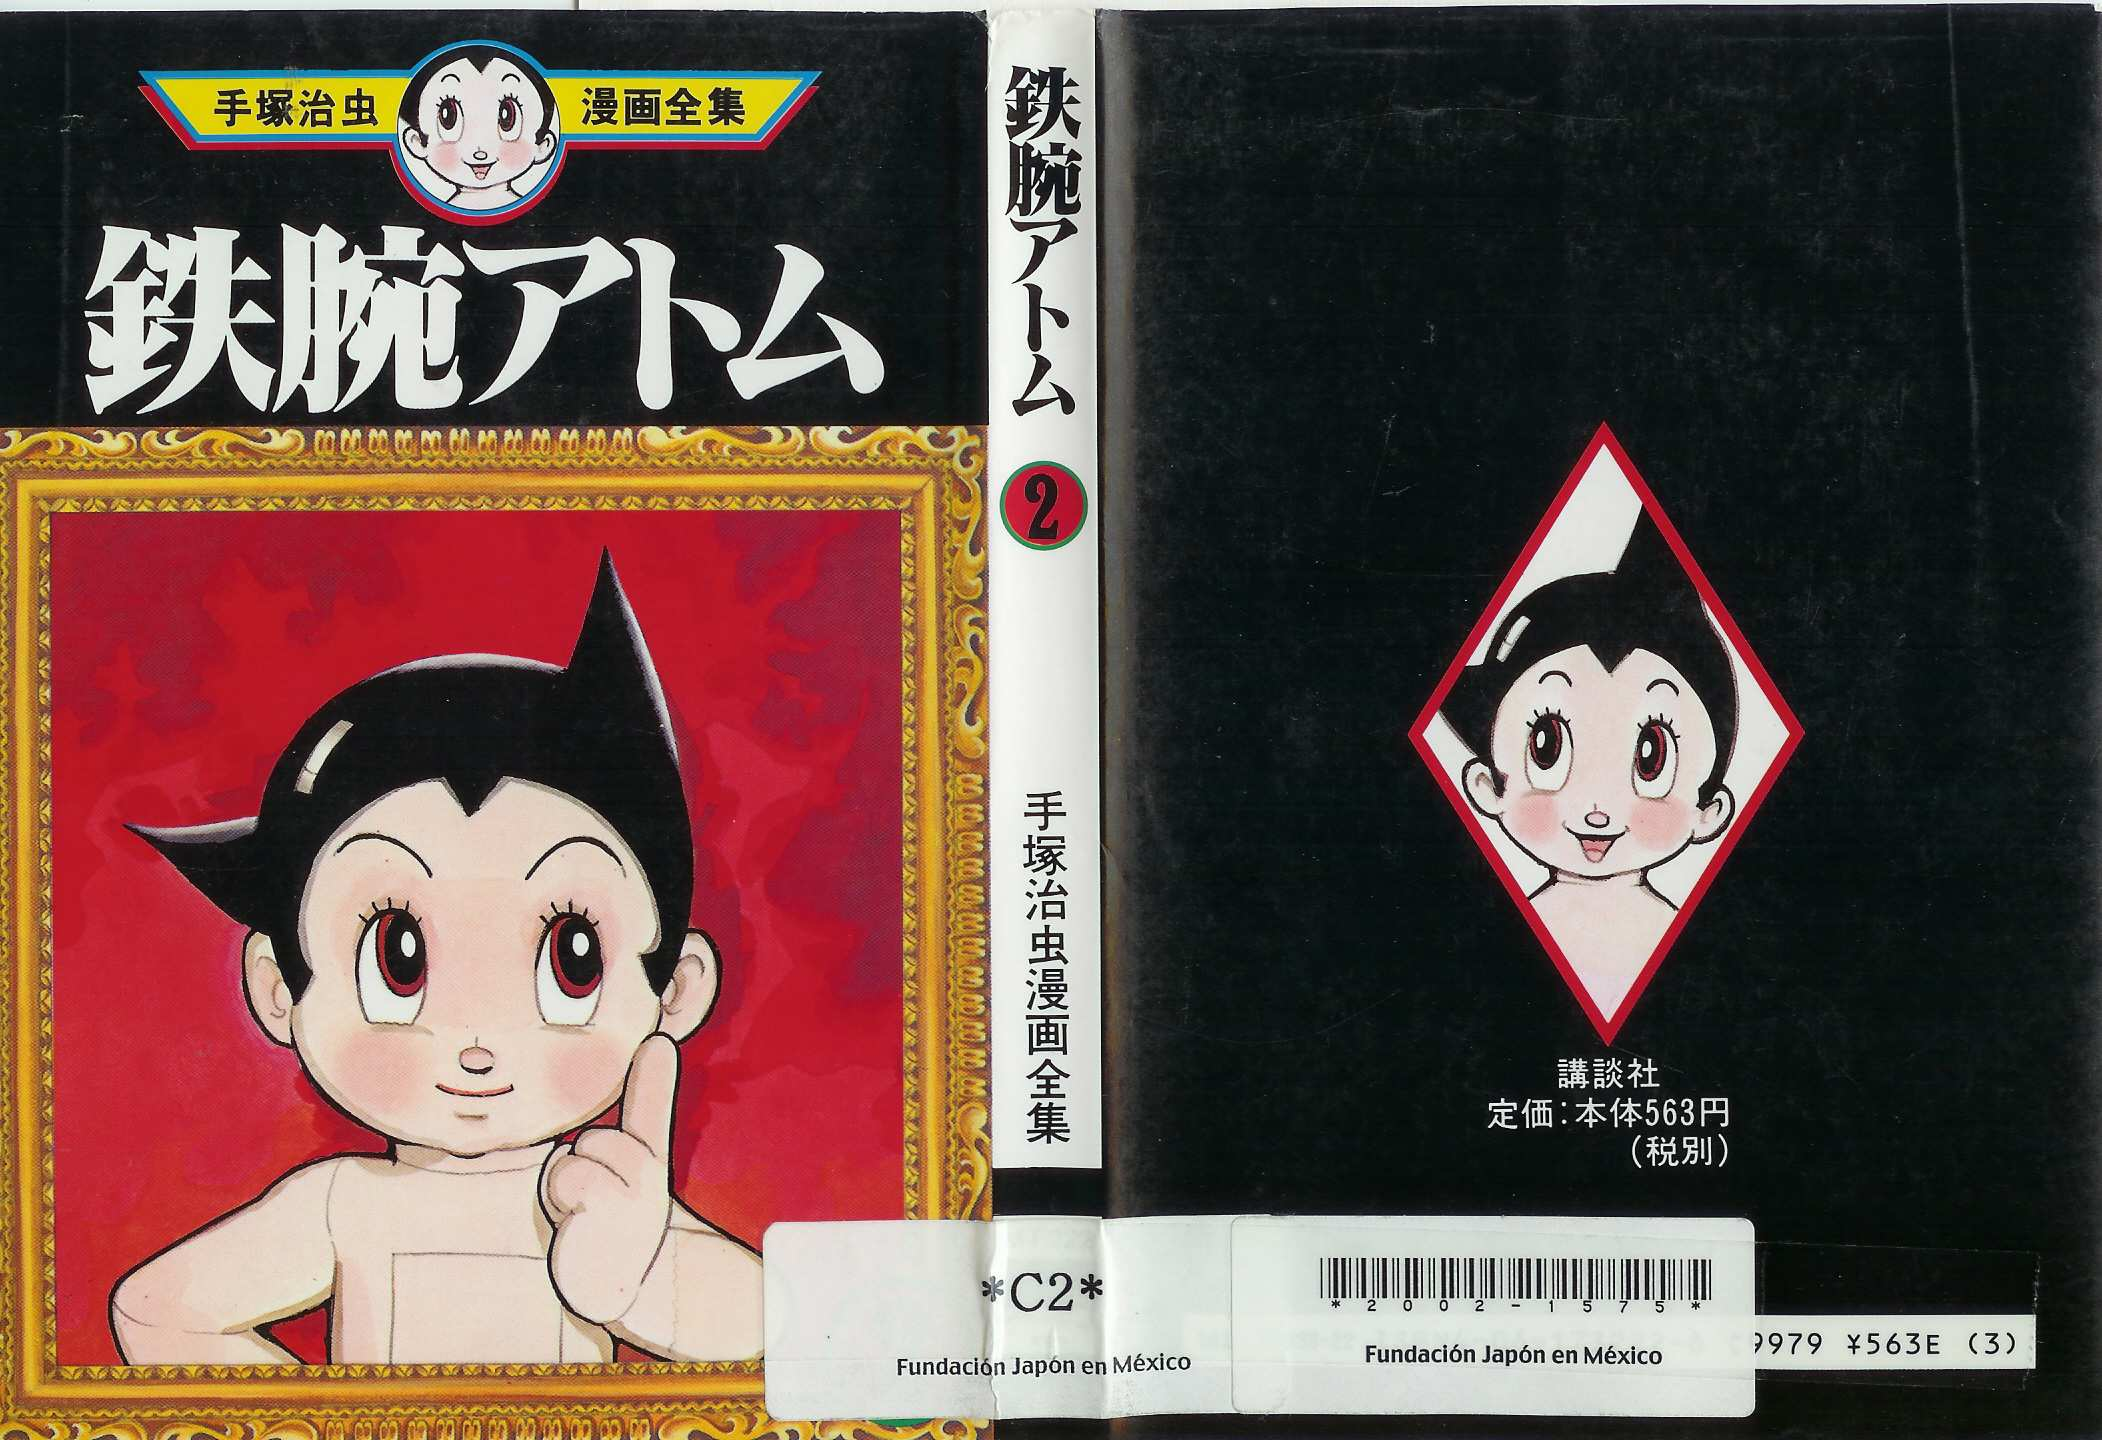 1 CÓMICS Y ANIMACIÓN JAPONESA (4) LA crisis de la historieta mexicana y el boom del cómics japonés.